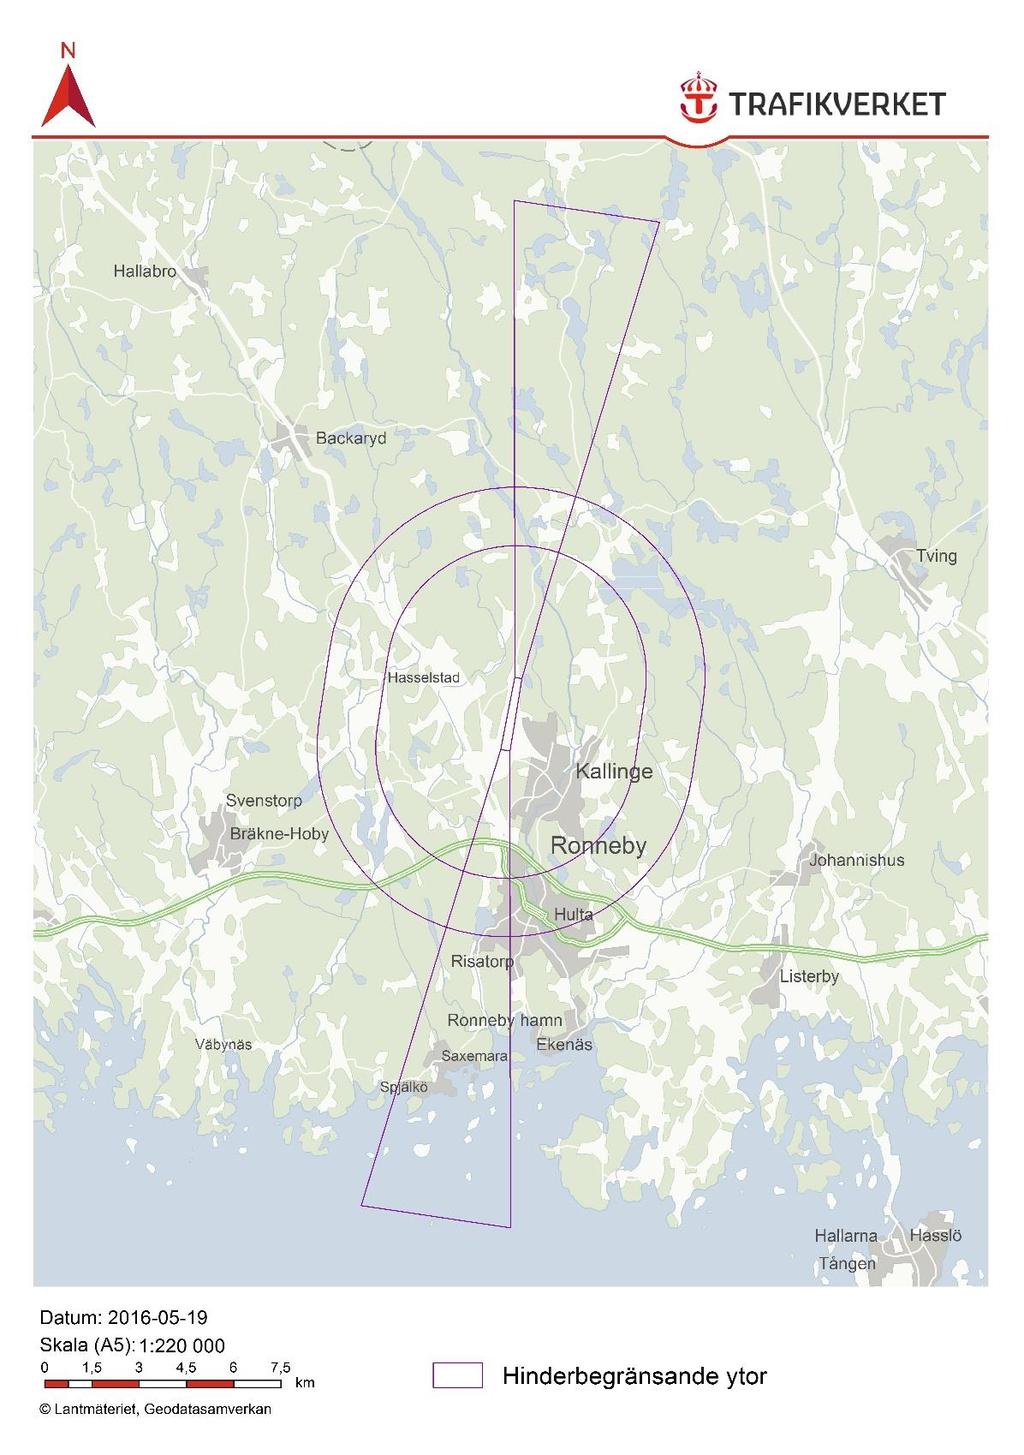 Figur 7 Den hinderbegränsande ytan vid Ronneby flygplats Procedurområden och MSA-ytor Trafikverket har bedömt att procedurområden och MSA-ytor inte är avgörande för riksintresset, men områdena